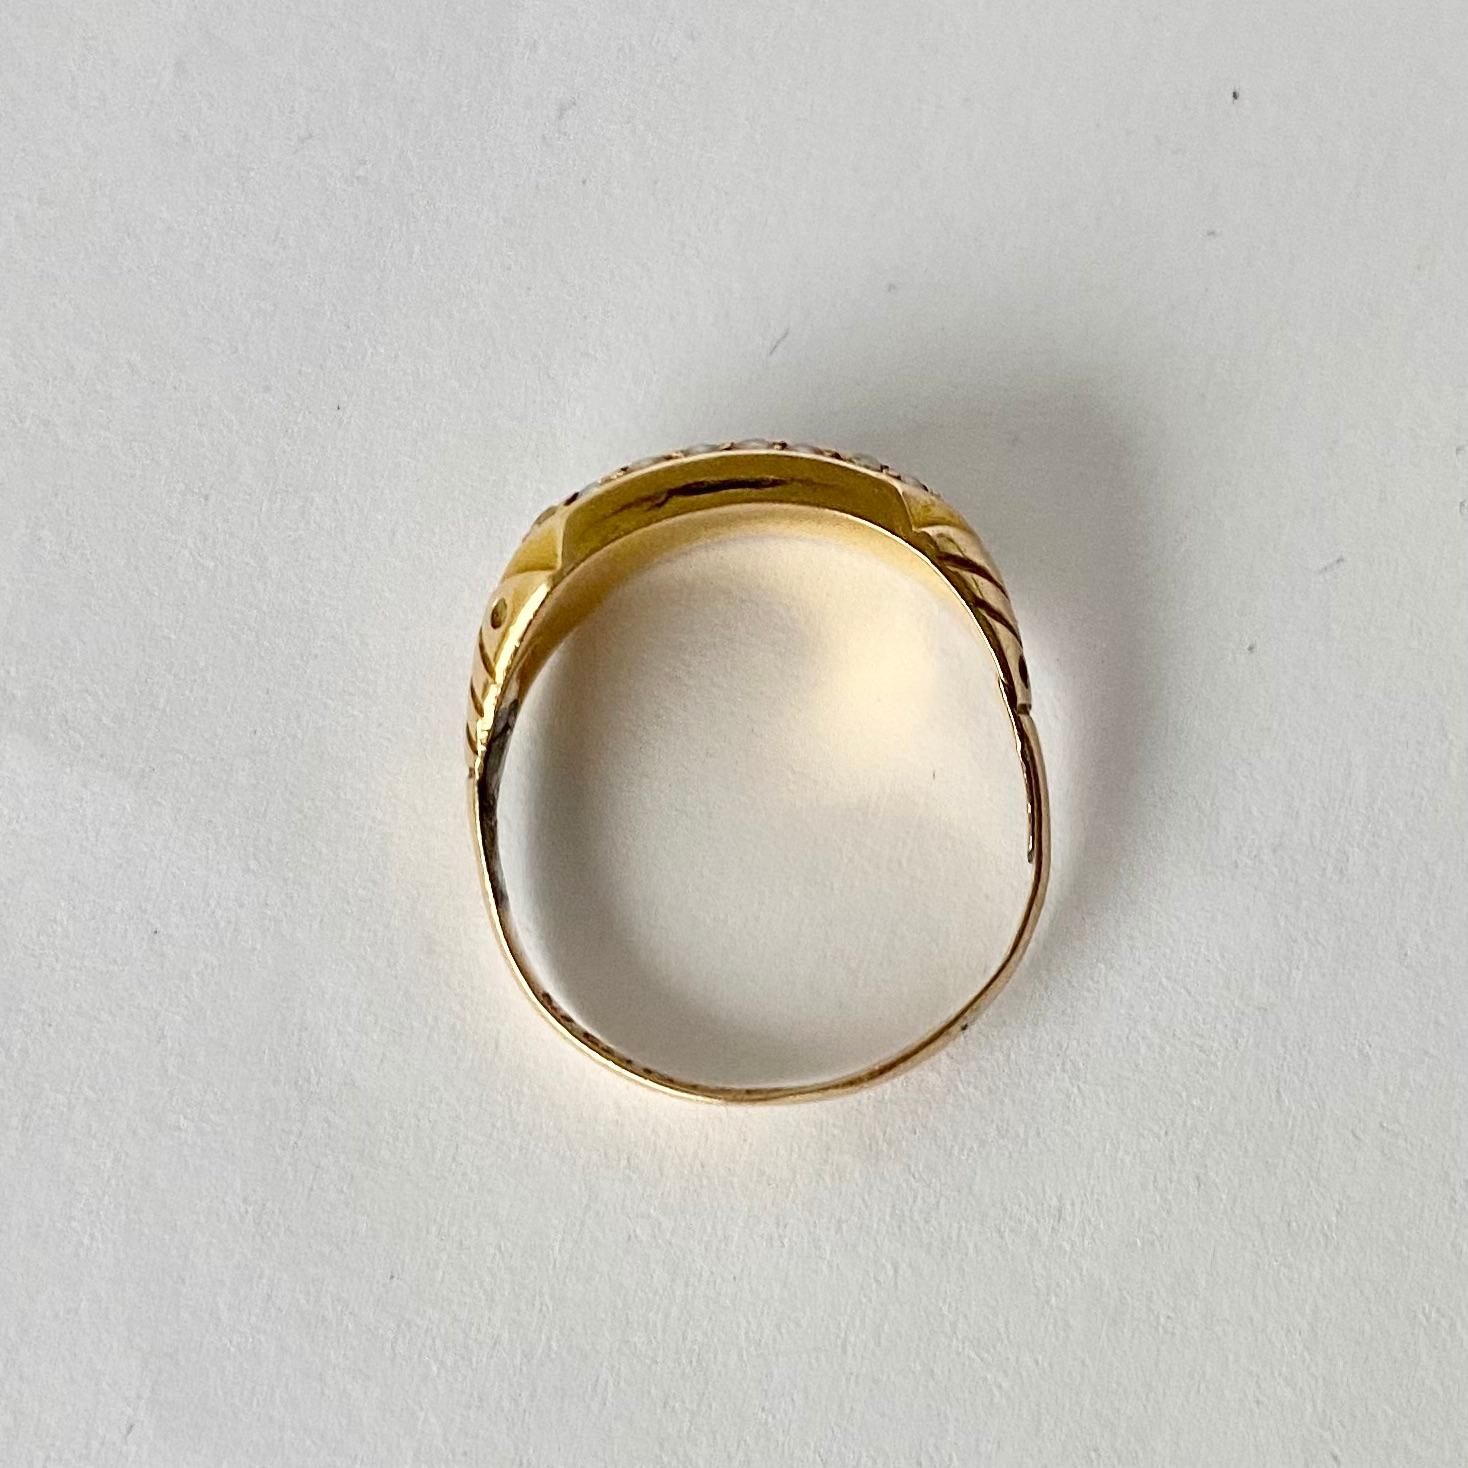 15 carat gold ring price